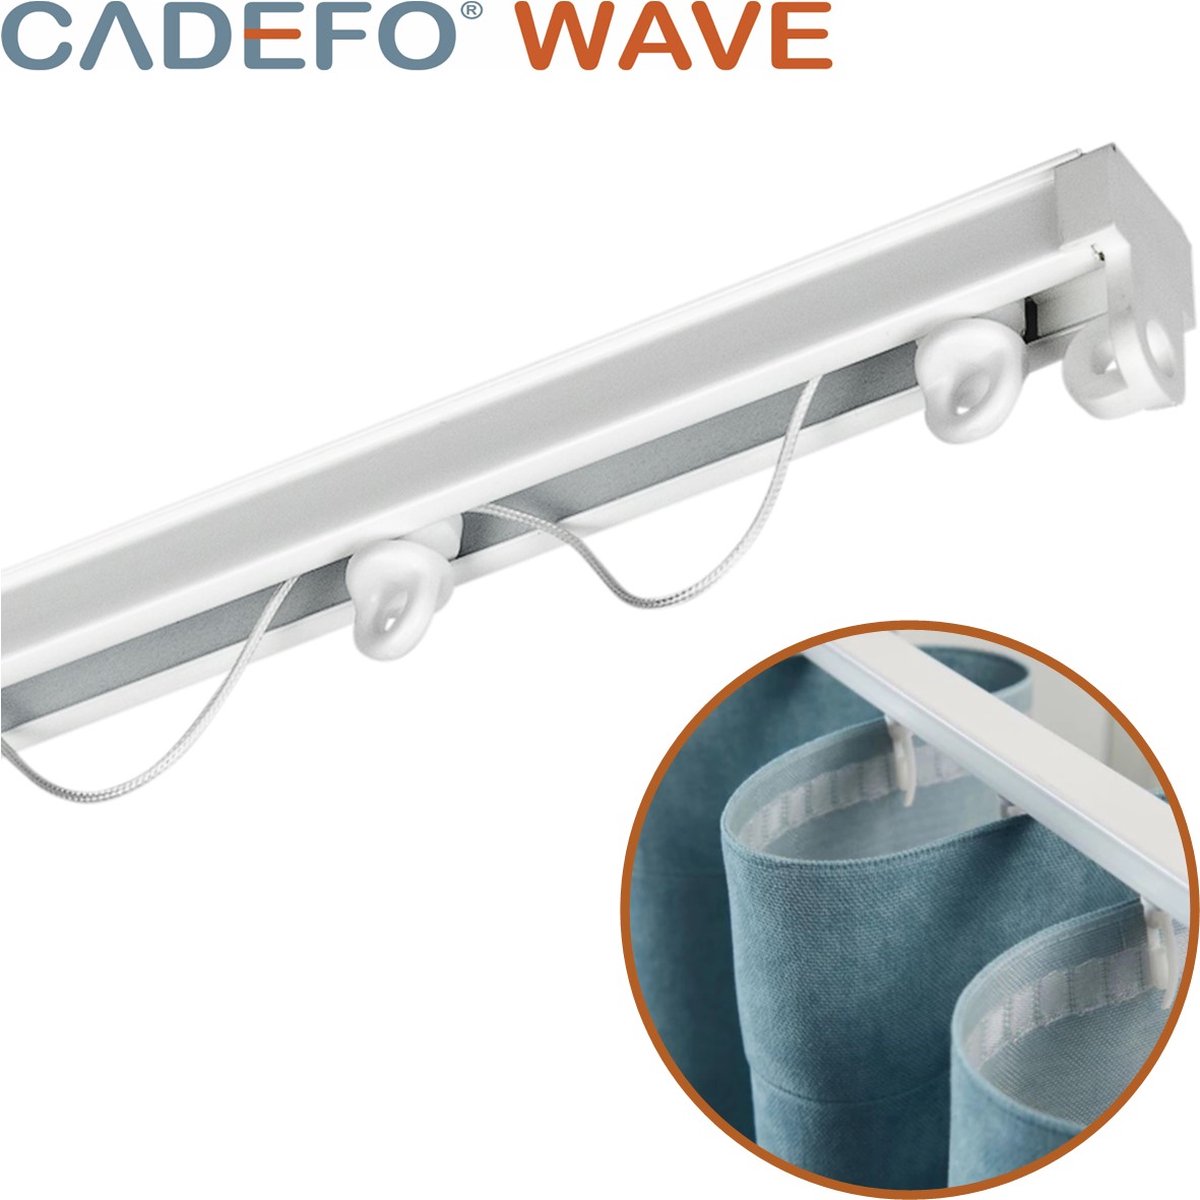 CADEFO WAVE (151 - 200 cm) Gordijnrails - Compleet op maat! - UIT 1 STUK - Leverbaar tot 6 meter - Plafondbevestiging - Lengte 190 cm